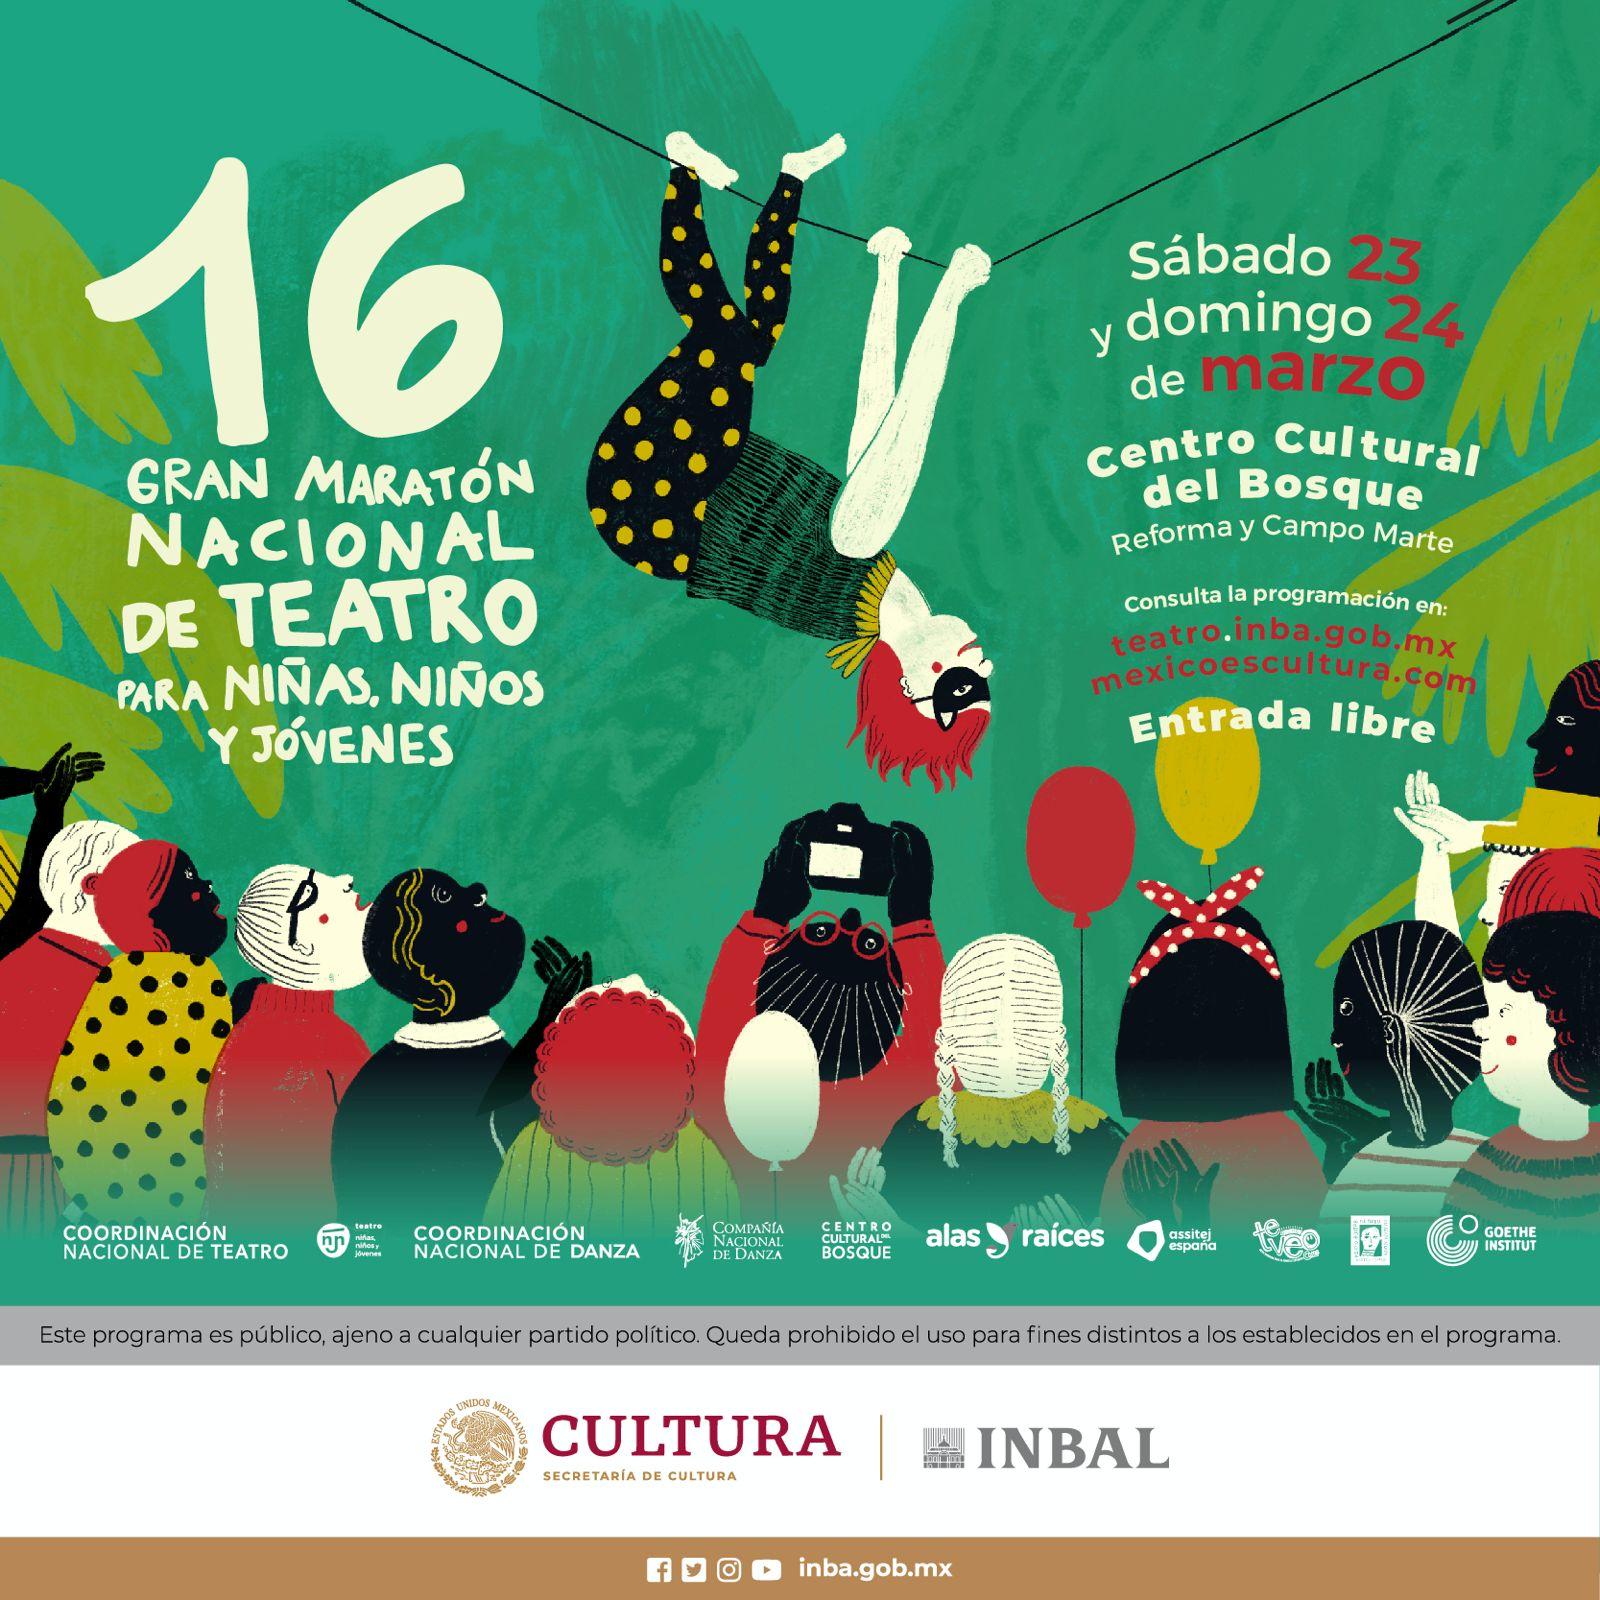 México celebra el 16° Gran Maratón de Teatro para niñas, niños y jóvenes